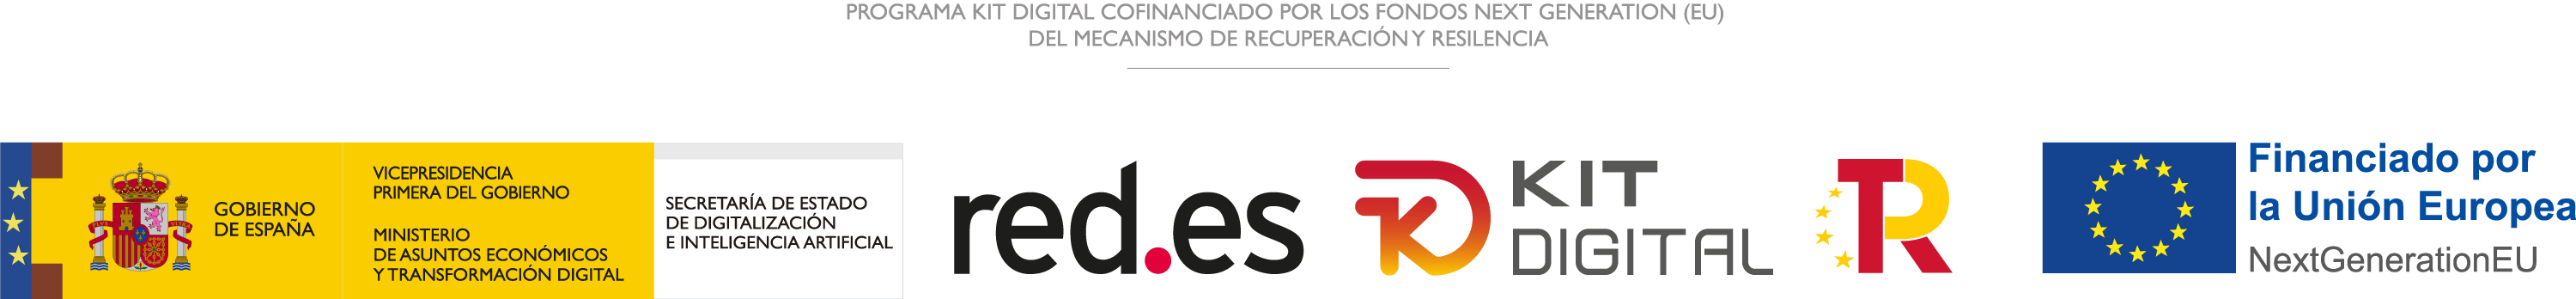 kit-digitala-logo.png